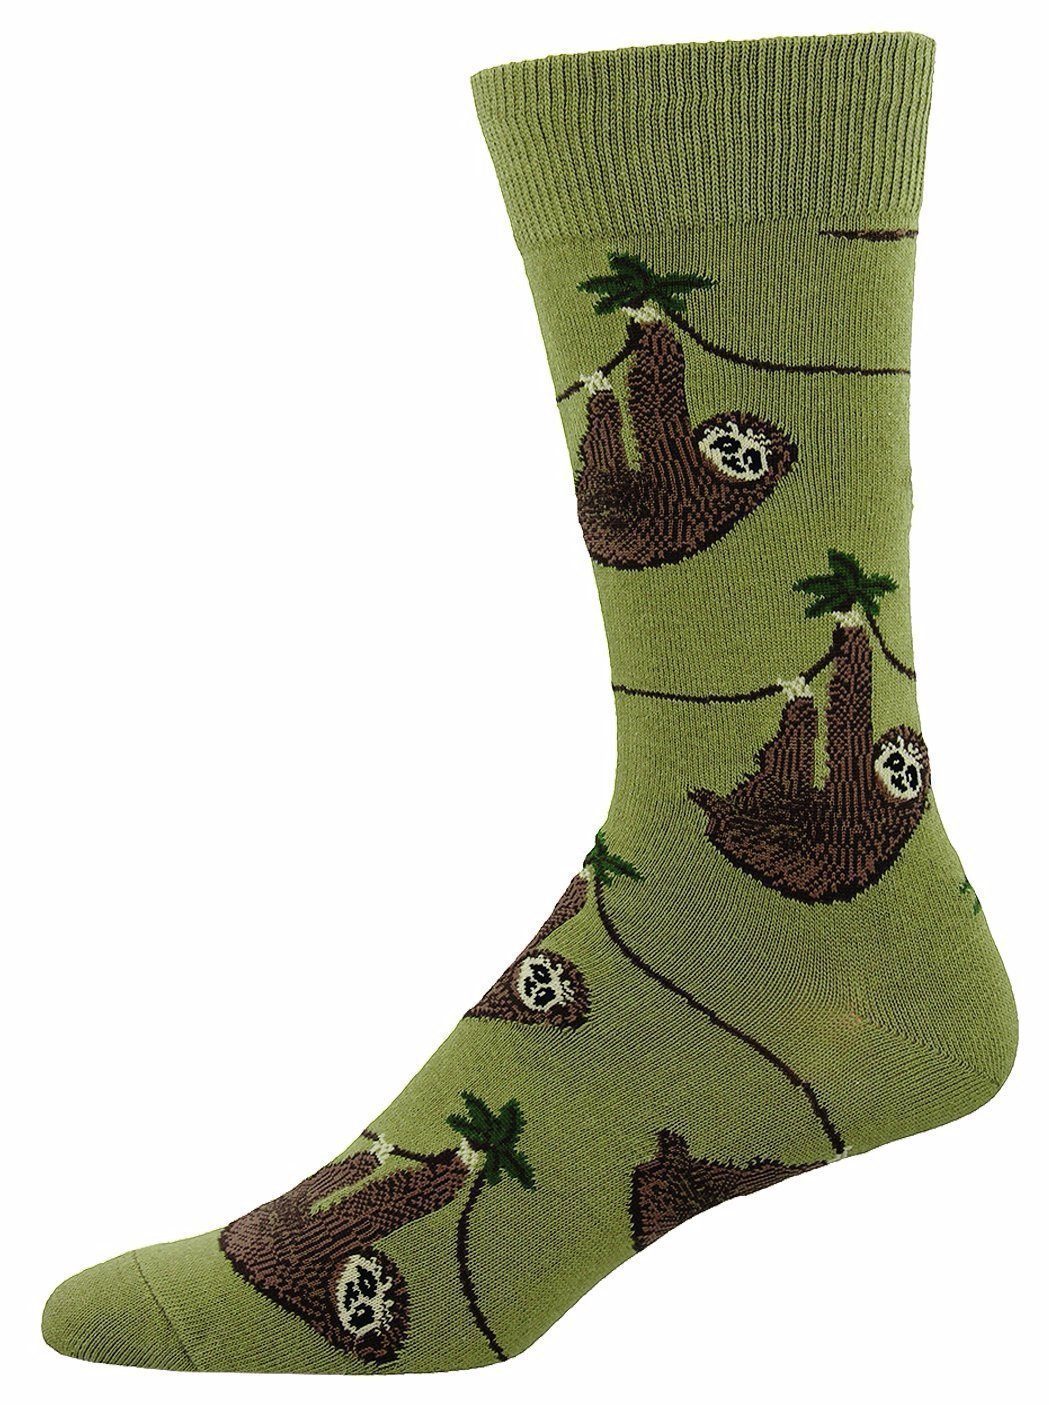 Socksmith - Sloth Crew Socks | Men's - Knock Your Socks Off